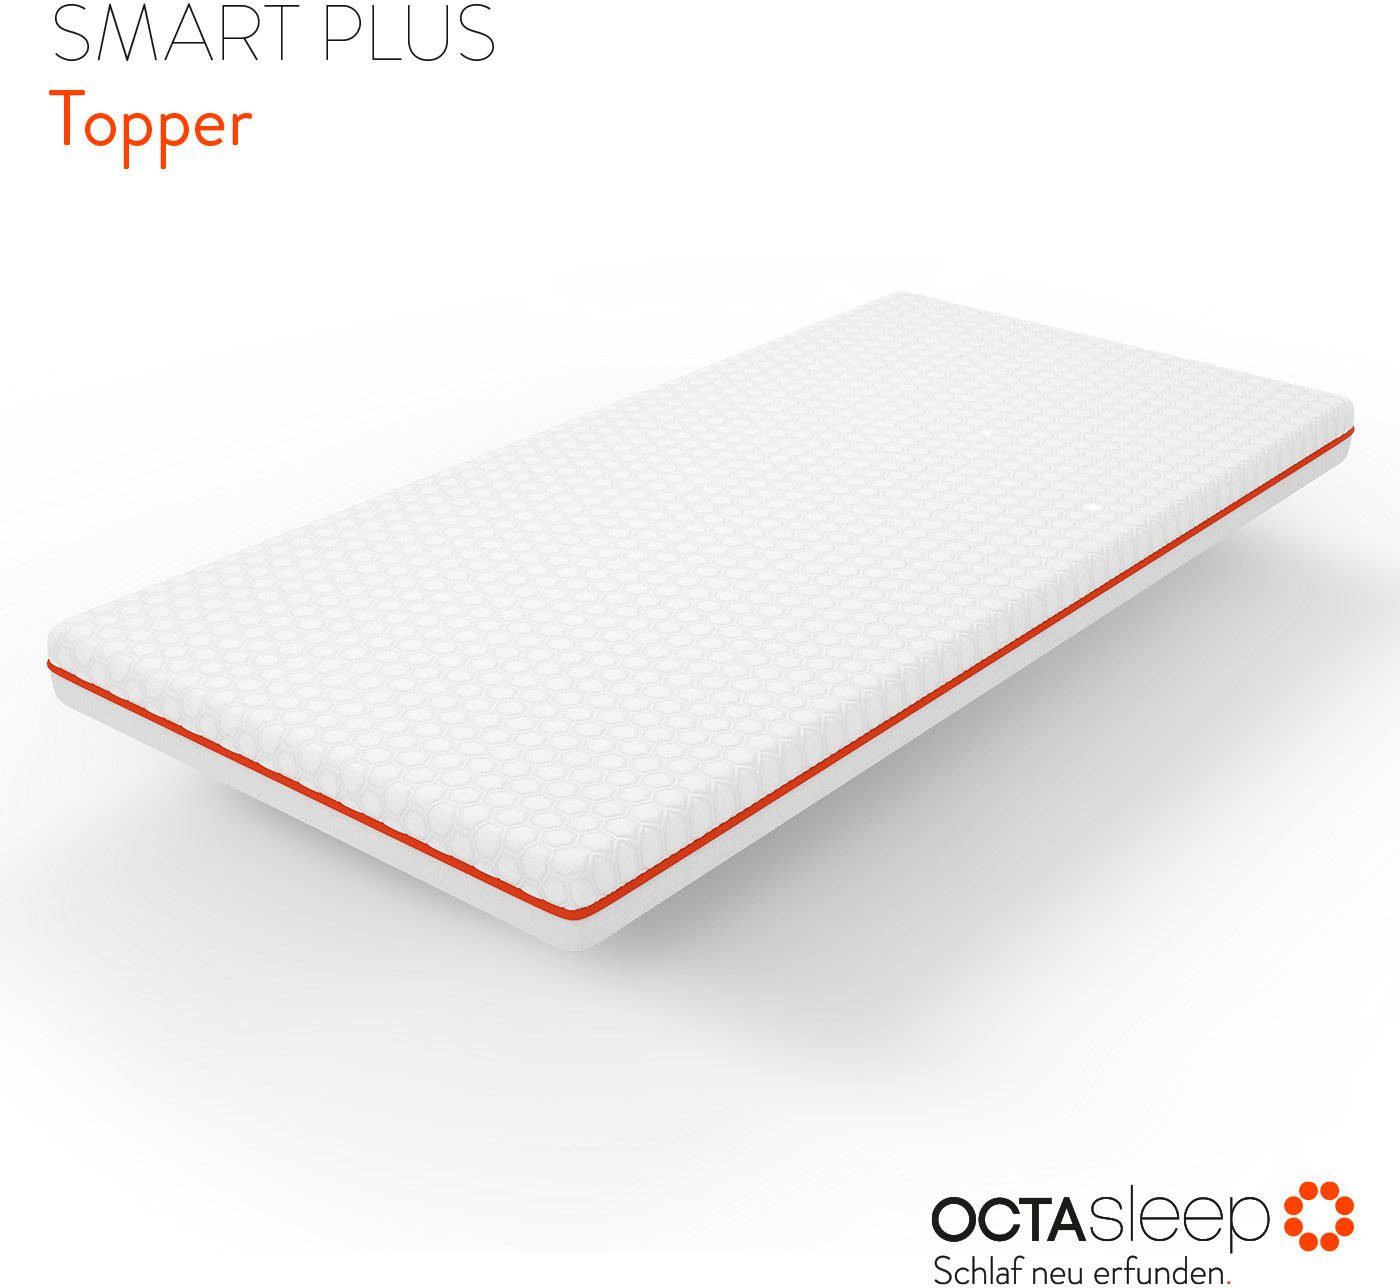 OCTAsleep Topmatras Octasleep Smart Plus Topper OCTAspring® Aerospace technologie (1 stuk)